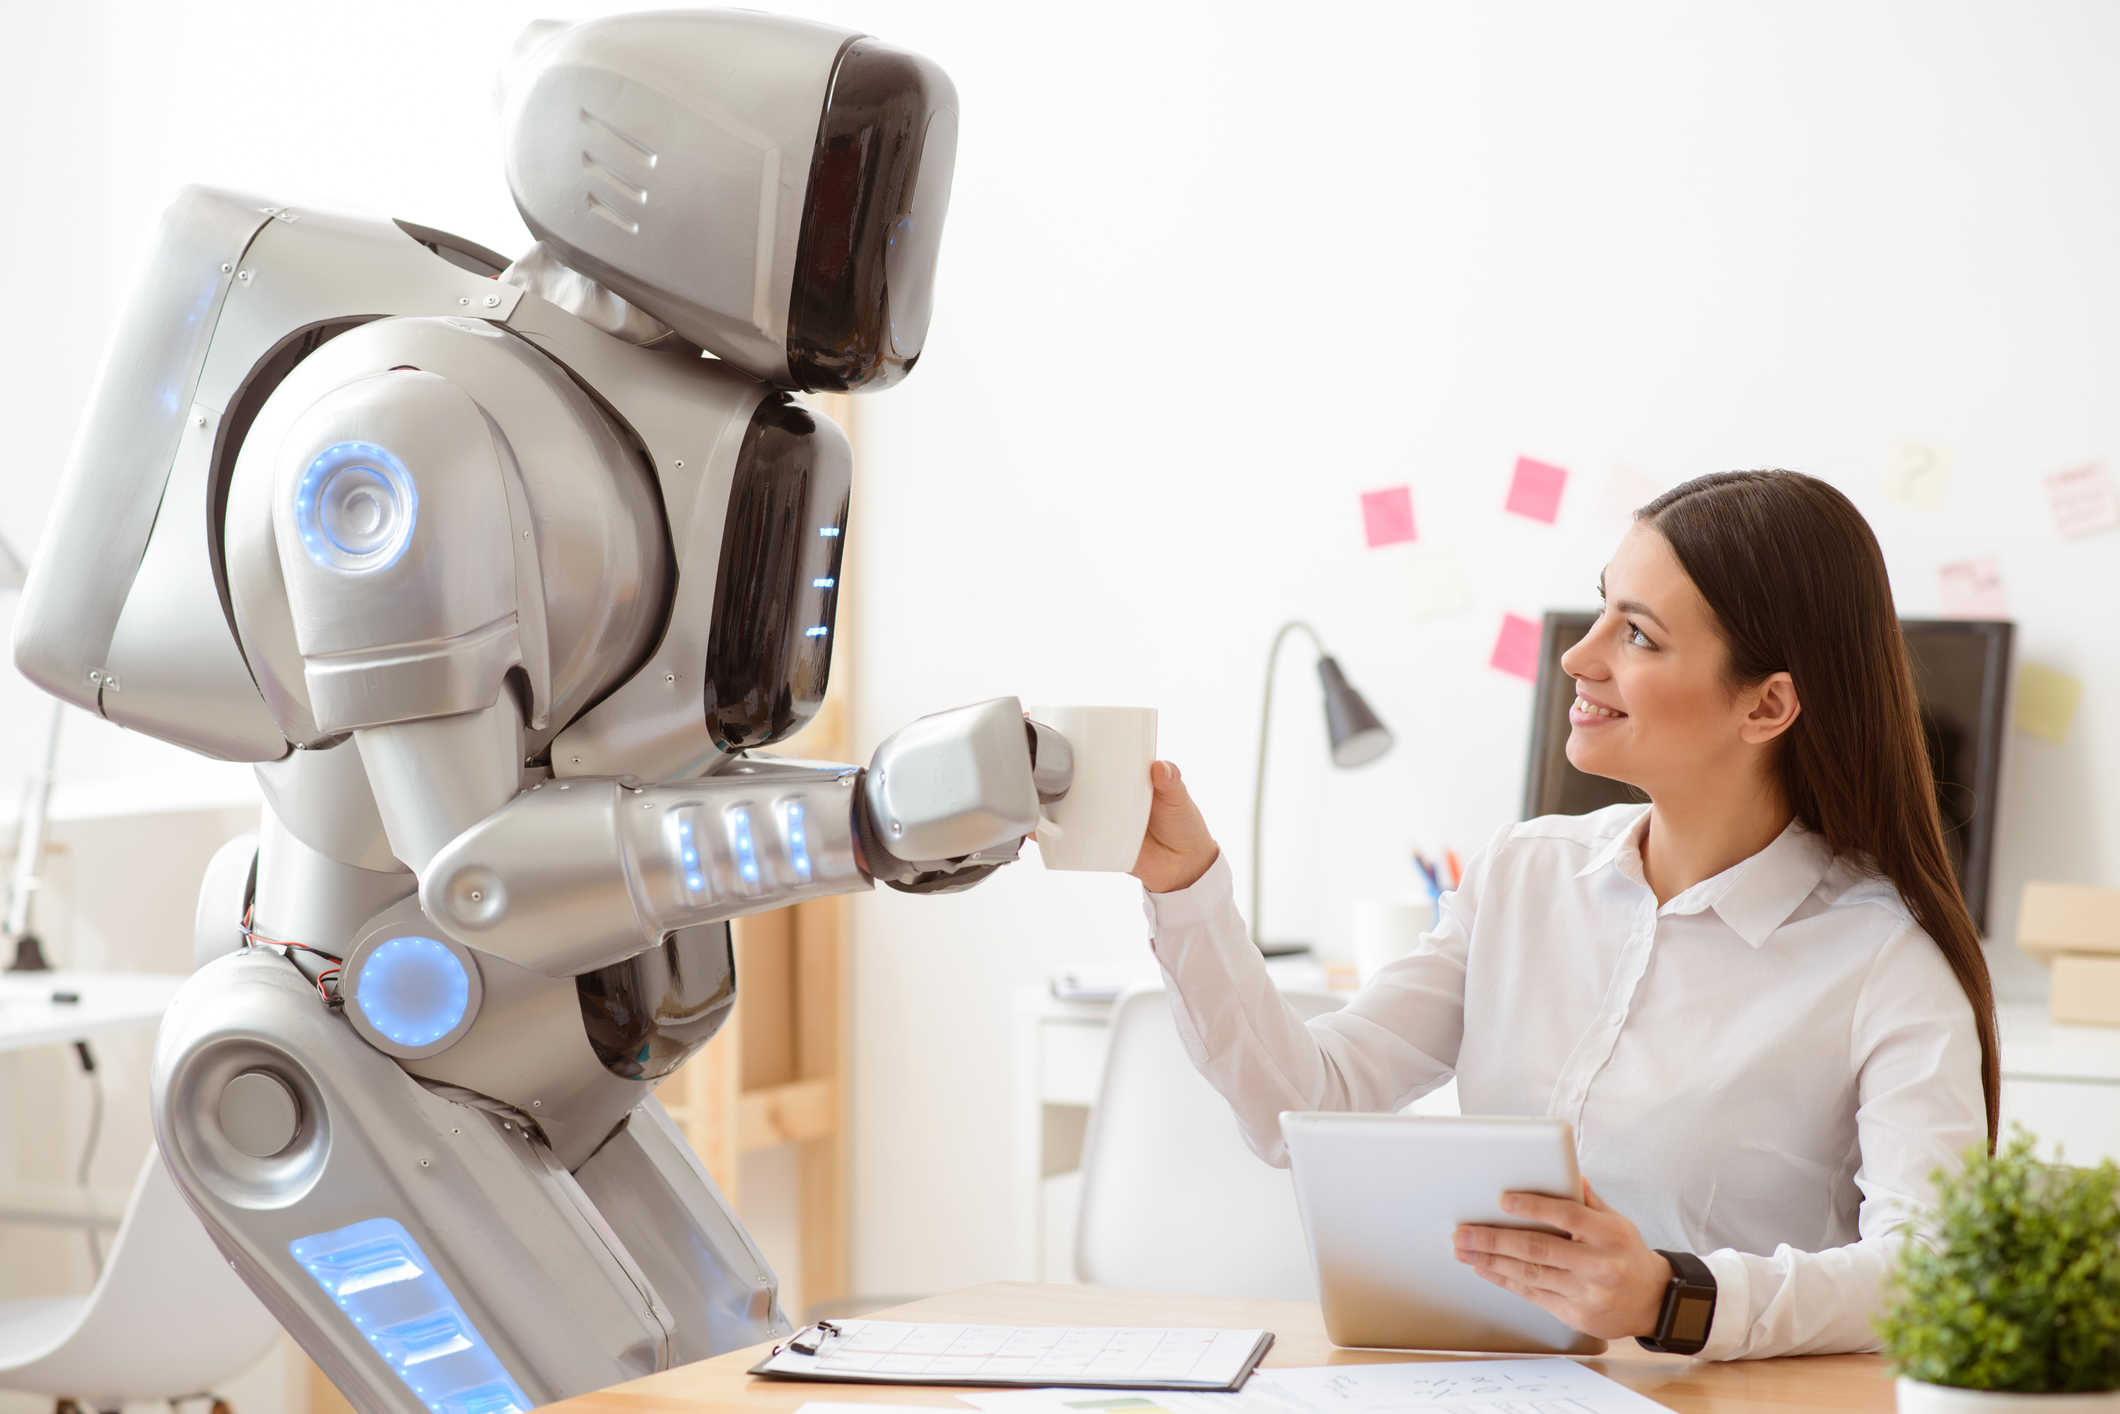 Робот искусственный интеллект говорящий. Робот человек. Роботы в будущем. Робот с искусственным интеллектом. Роботы заменят людей.